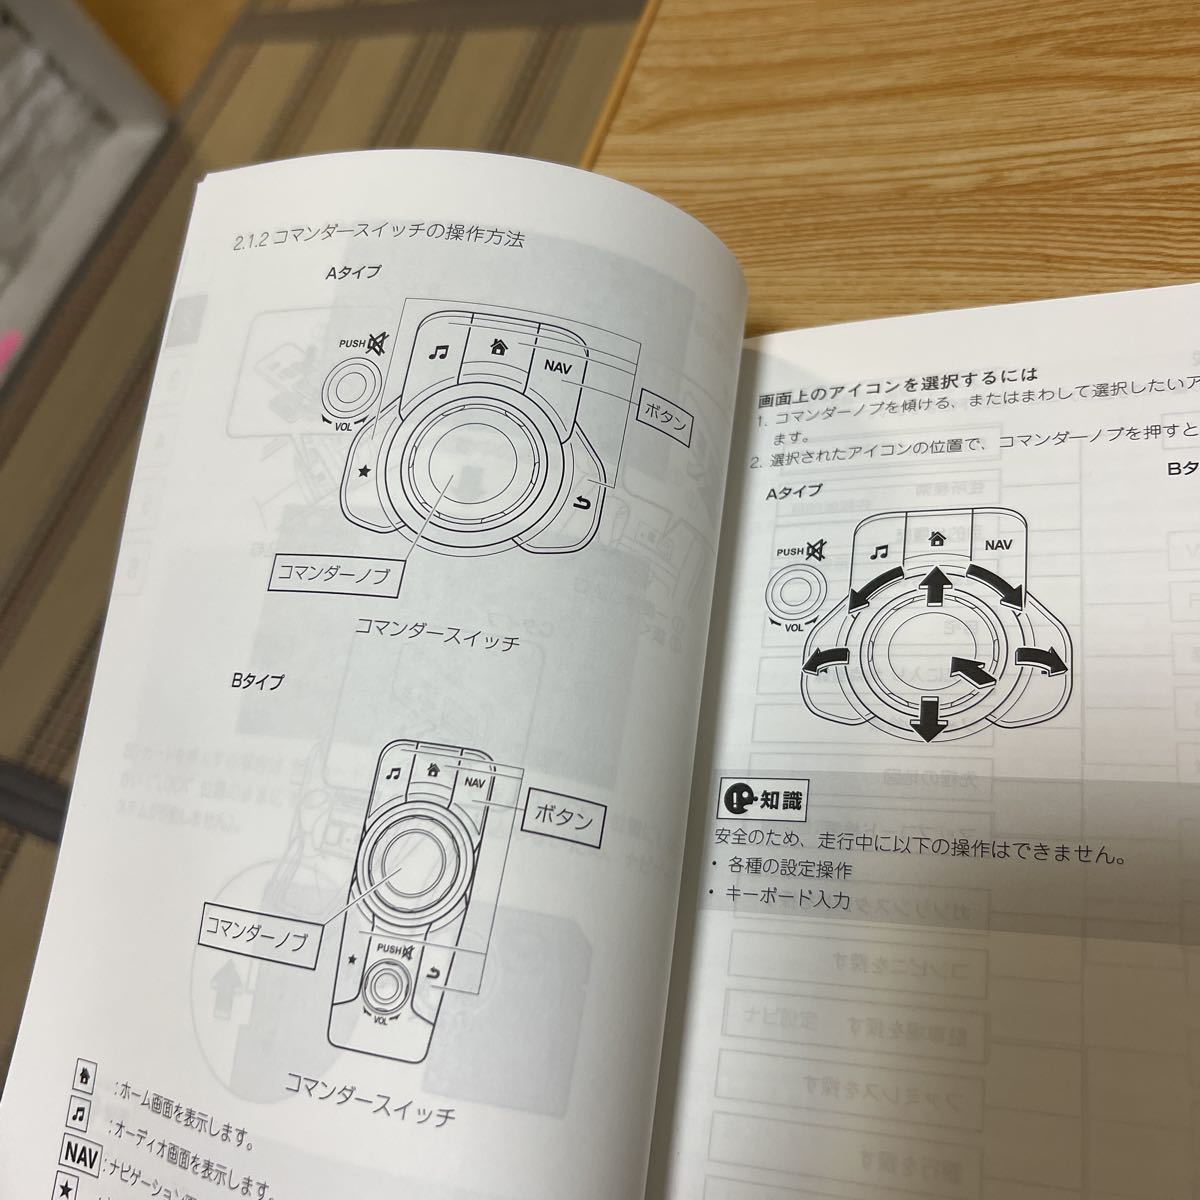 ② Mazda navigation system,MAZDA, navi user's manual, manual, control 1403